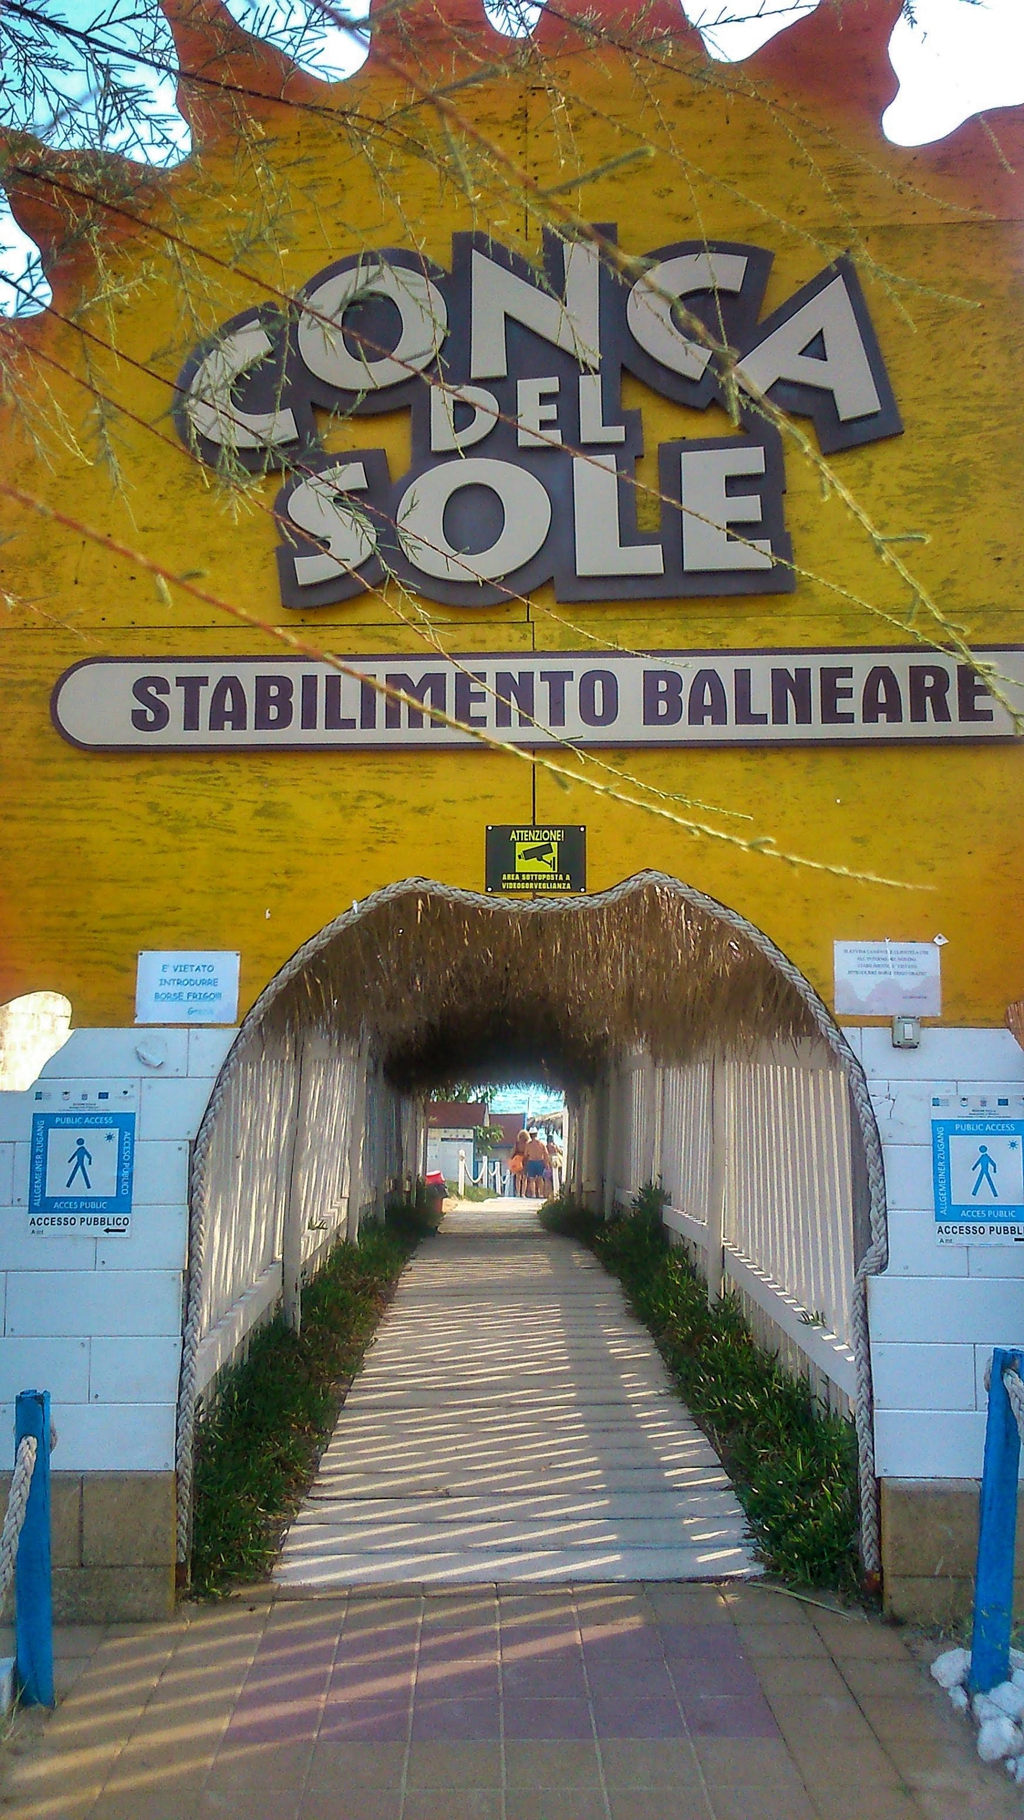 Lido Conca del Sole - Marina di Lizzano, (Taranto), Puglia